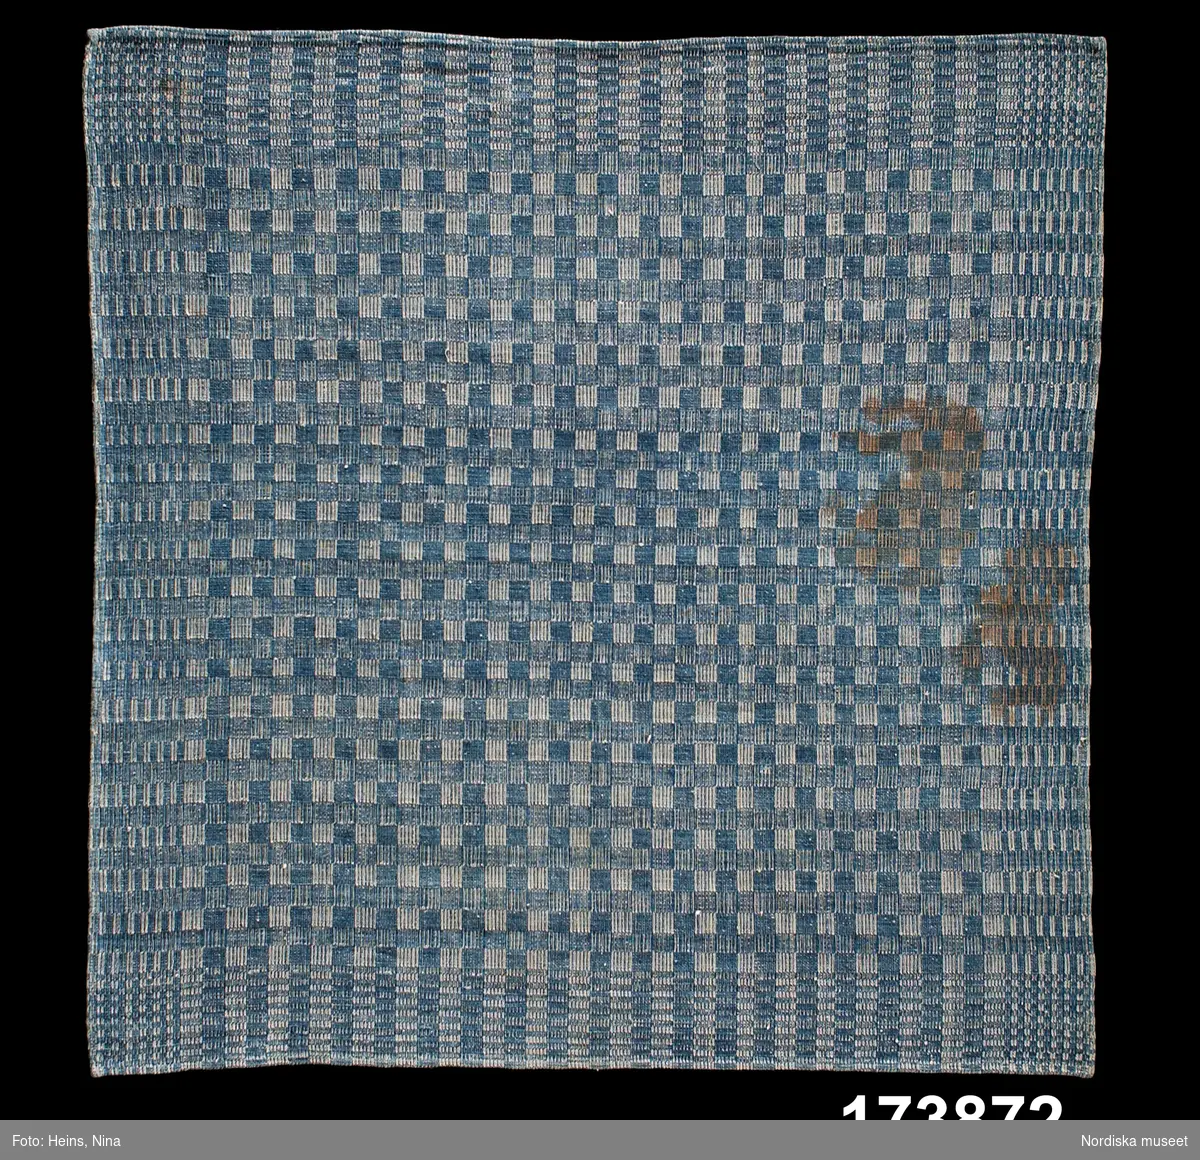 Bordduk.
Varp: 1-trådigt Z-spunnet vitt bomullsgarn, cirka 300 trådar/10 cm.
Inslag: 1-trådigt Z-spunnet blått bomullsgarn.
Förenklad dräll på två partier, så kallad halvdräll. Vävd på fyra skaft. Trädd med 3 trådar i rör enligt väverskan. En duk vävd med bård och schackrutigt mittfält. En smal fåll runt om är sydd på maskin.
/Berit Eldvik 2002